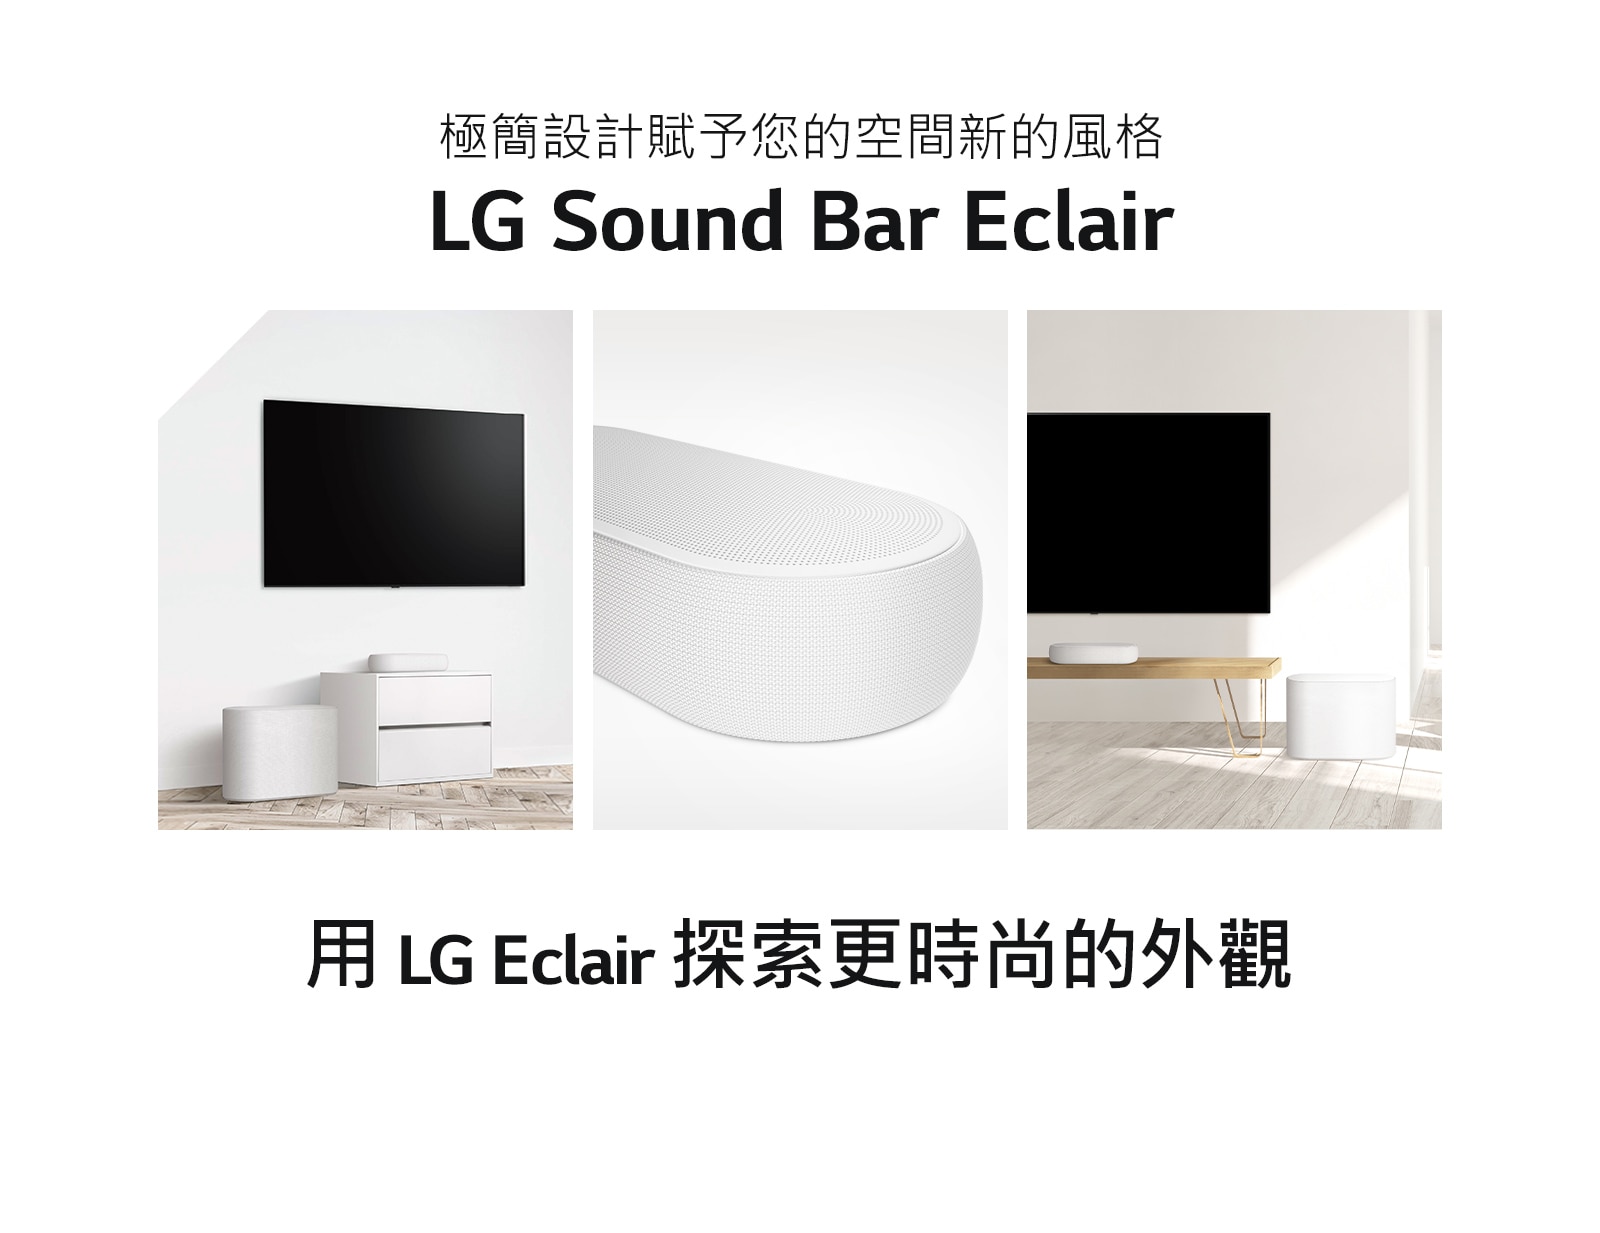 三個圖像組成的拼貼圖——左邊的Sound Bar和重低音喇叭在白色客廳裡，中間的Sound Bar右側特寫，以及拼貼圖右邊的Sound Bar和低音喇叭放在木櫃上。